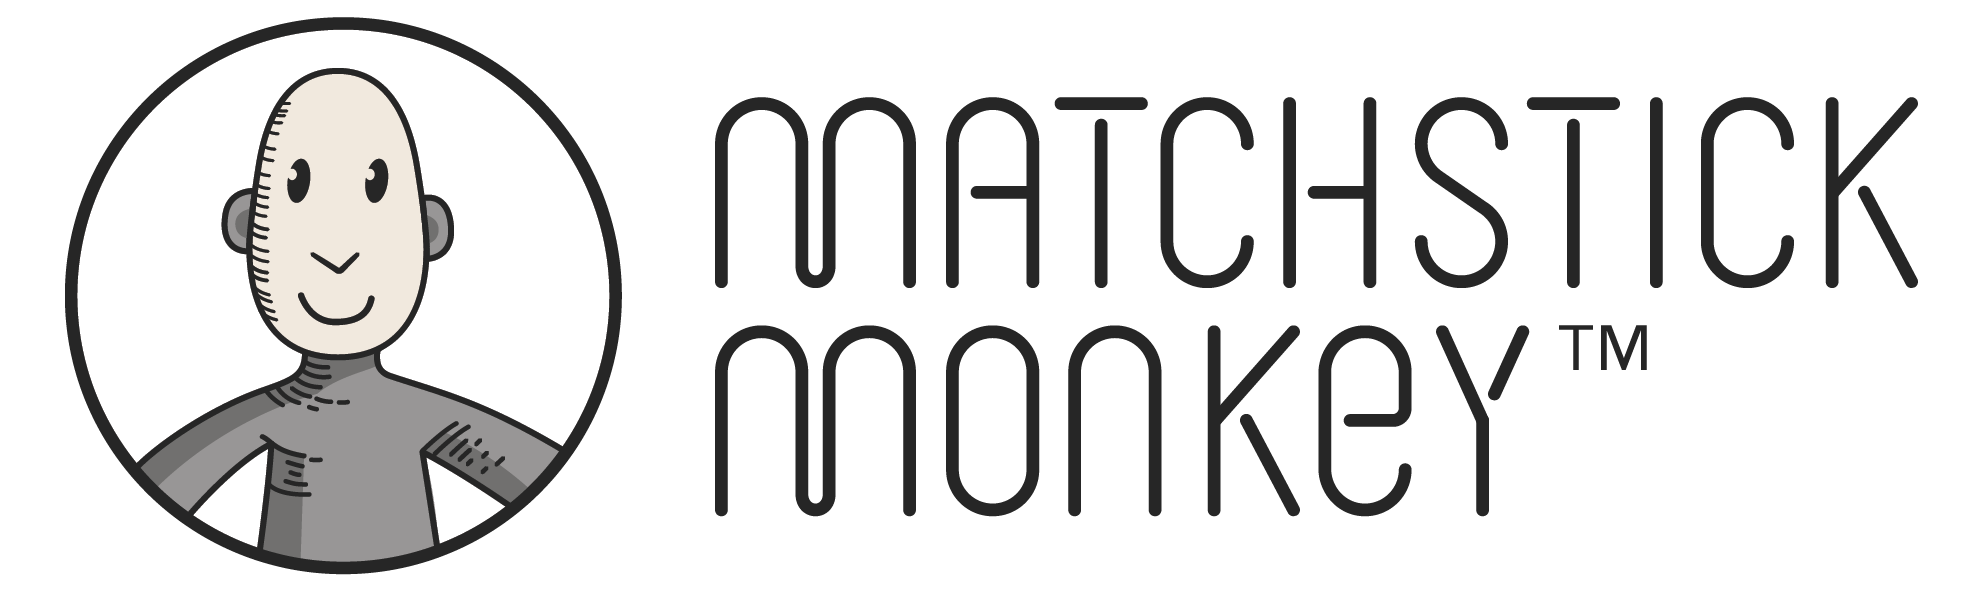 Anneau de dentition - Matchstick Monkey – La picorette